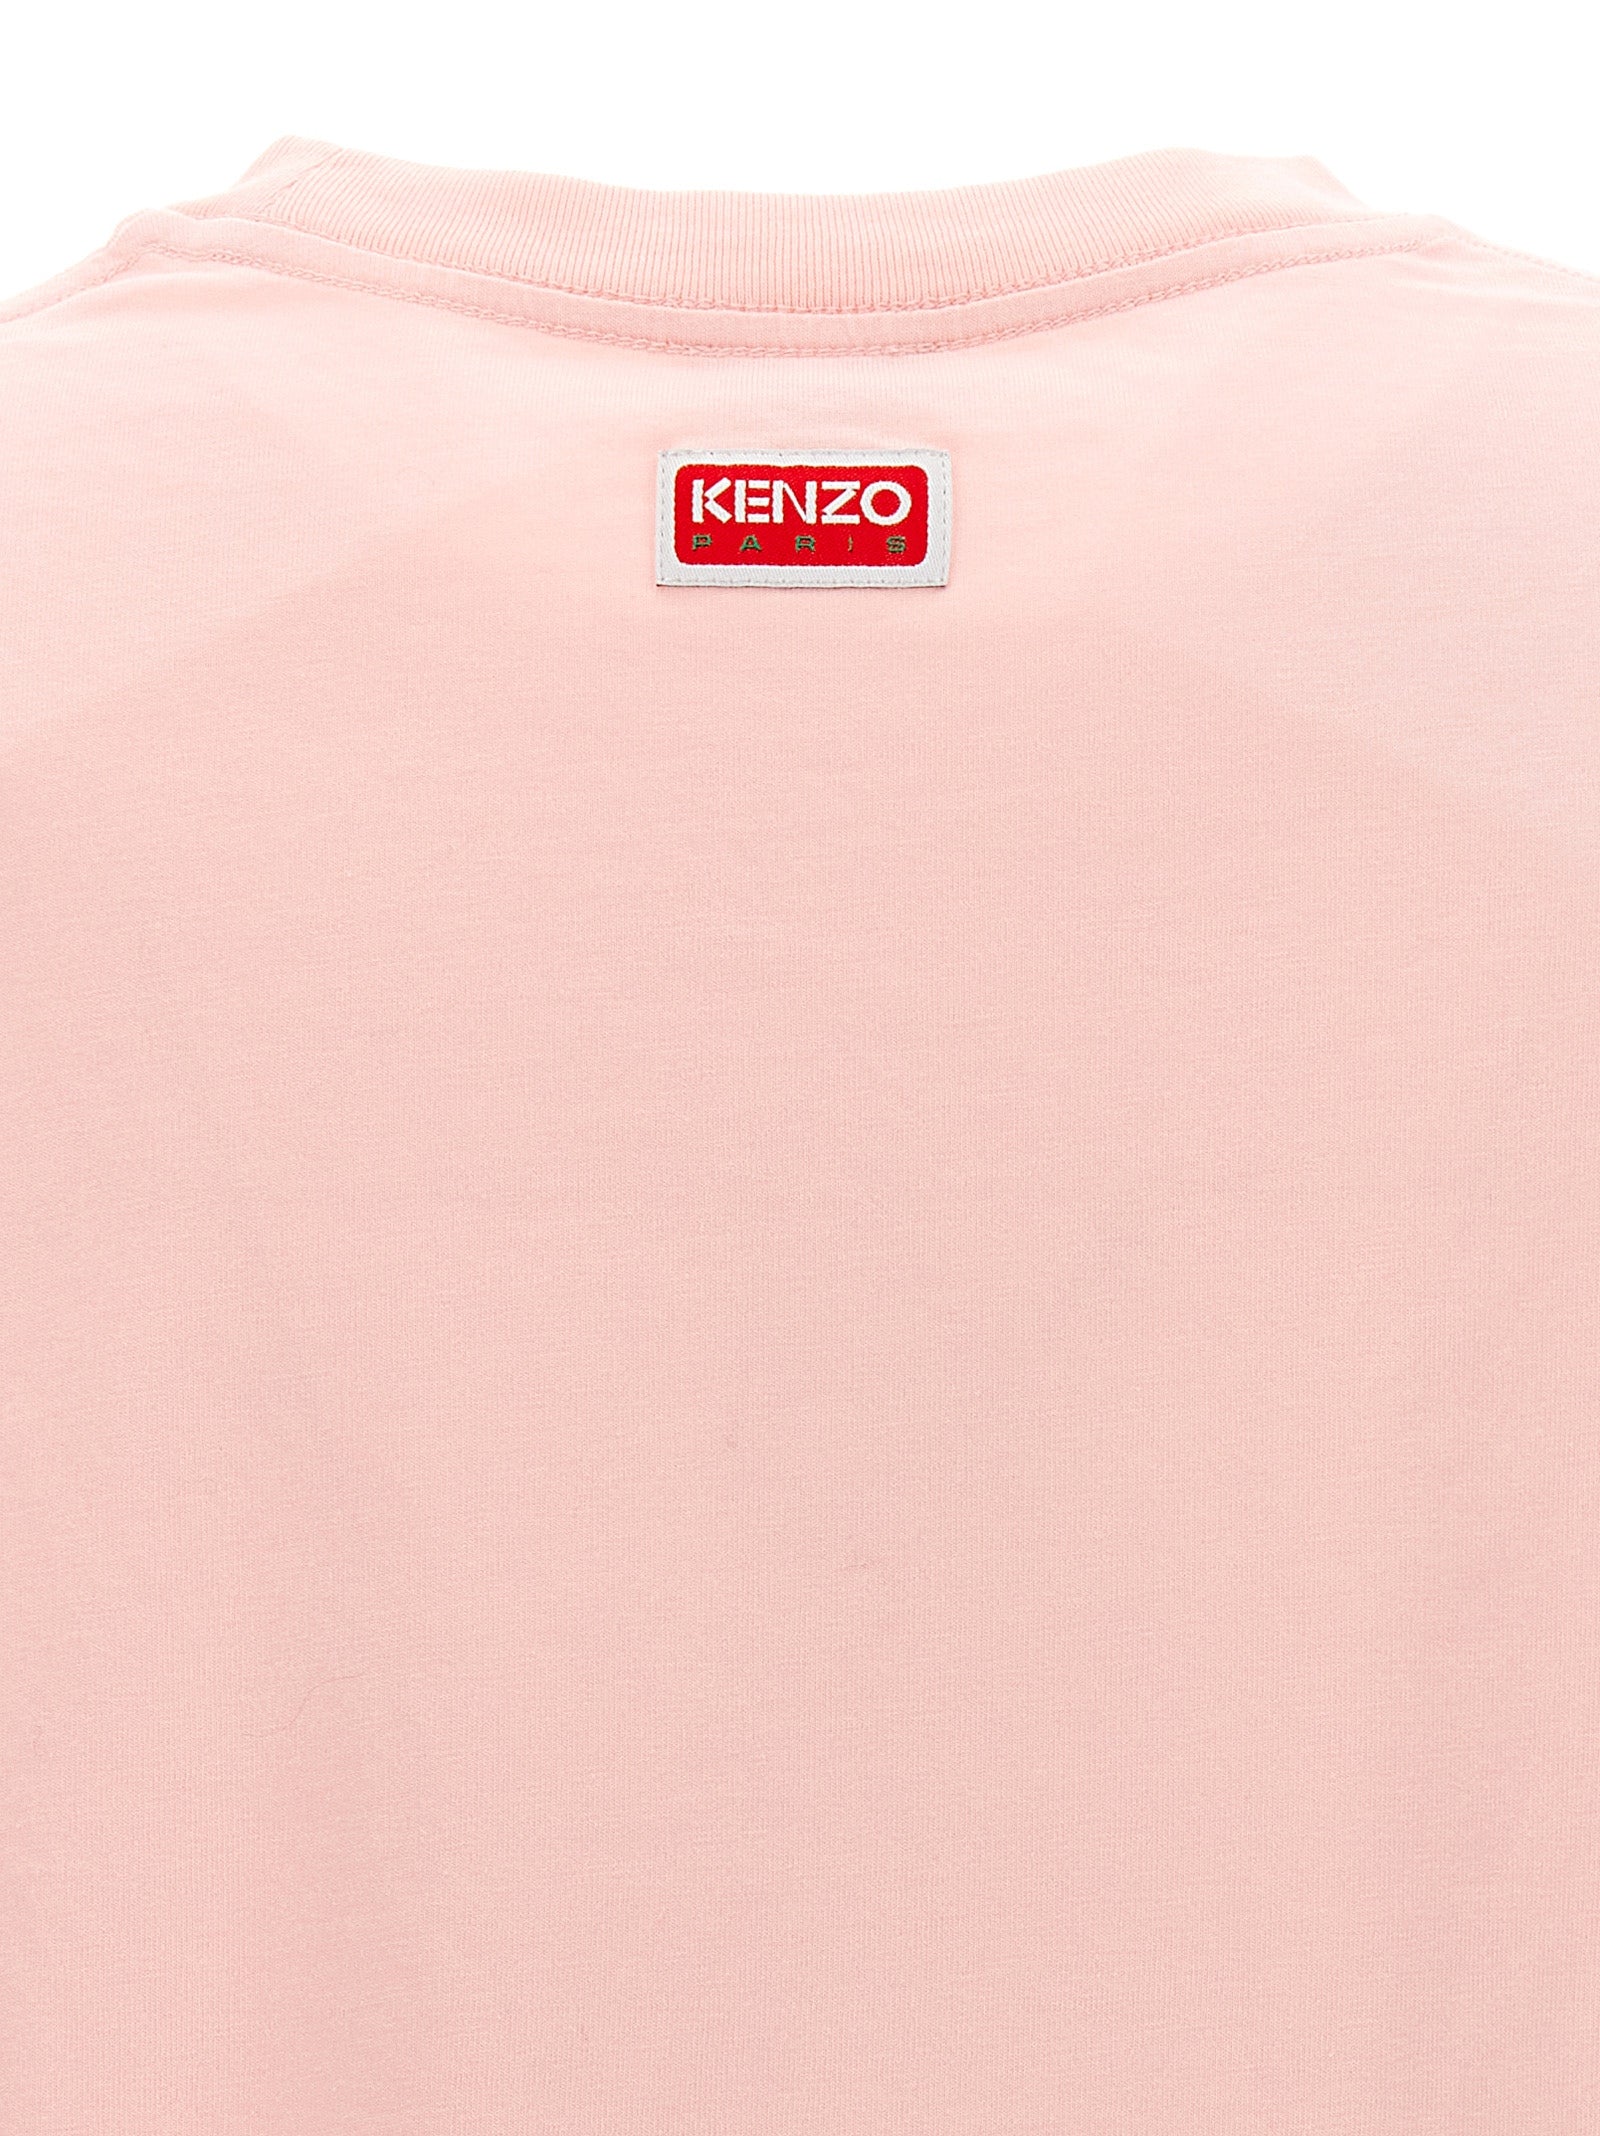 Kenzo Paris T-Shirt Pink